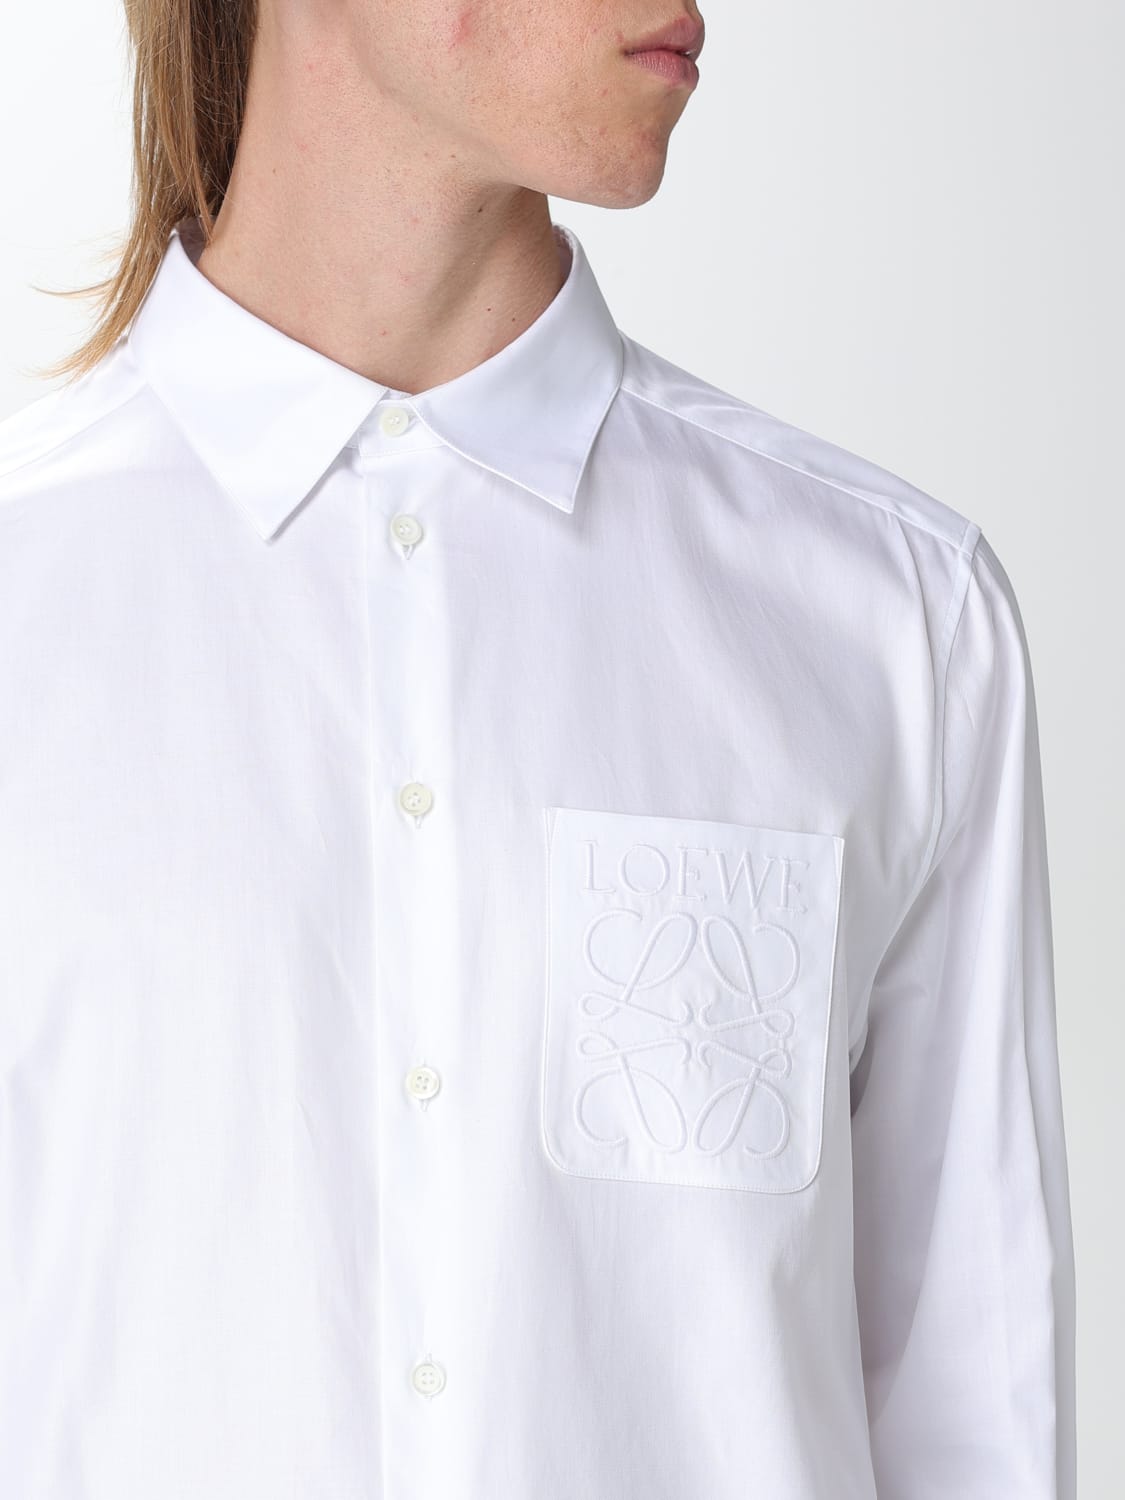 LOEWE: shirt for man - White | Loewe shirt H526Y05WB1 online at